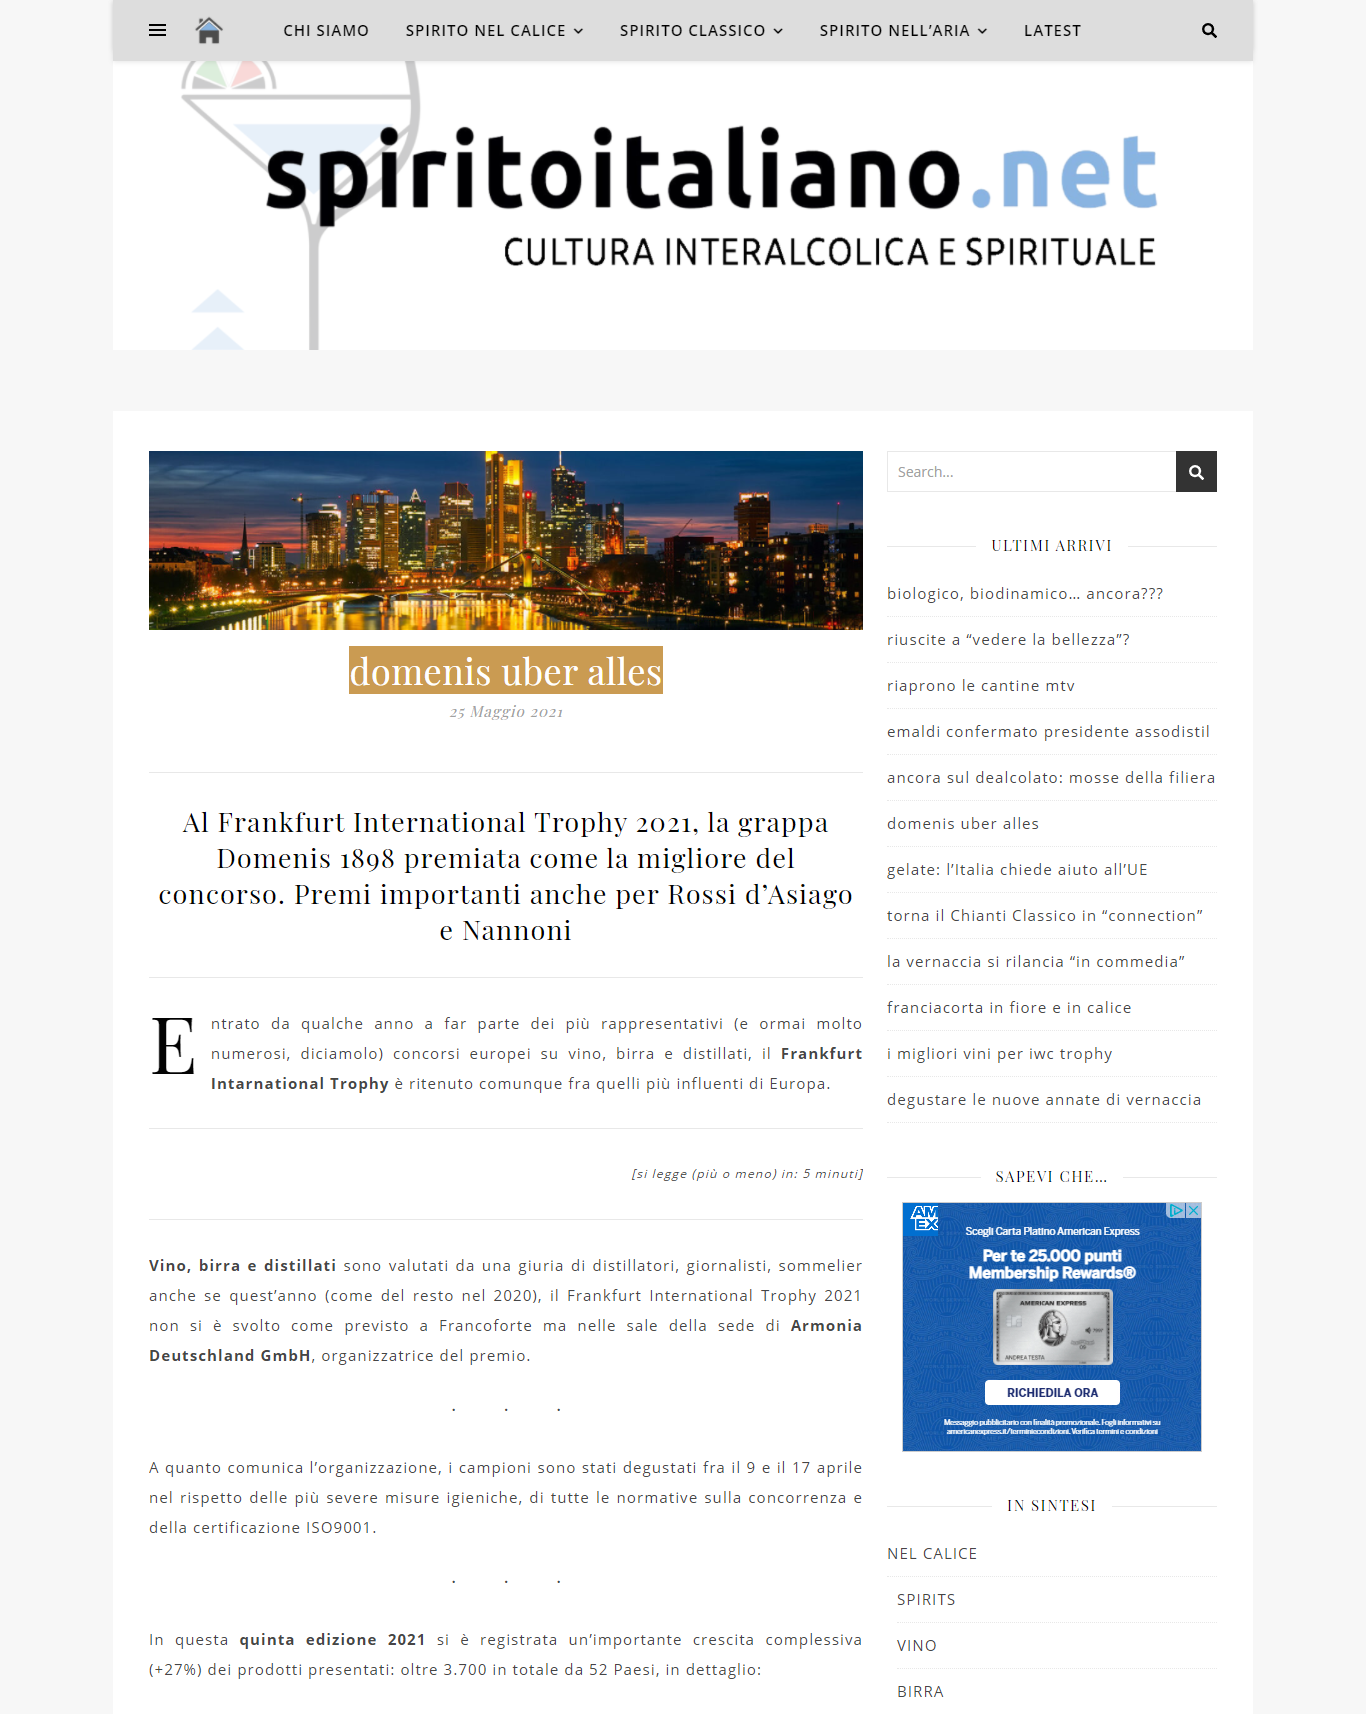 2021 maggio 25: Spiritoitaliano.net – Domenis uber alles